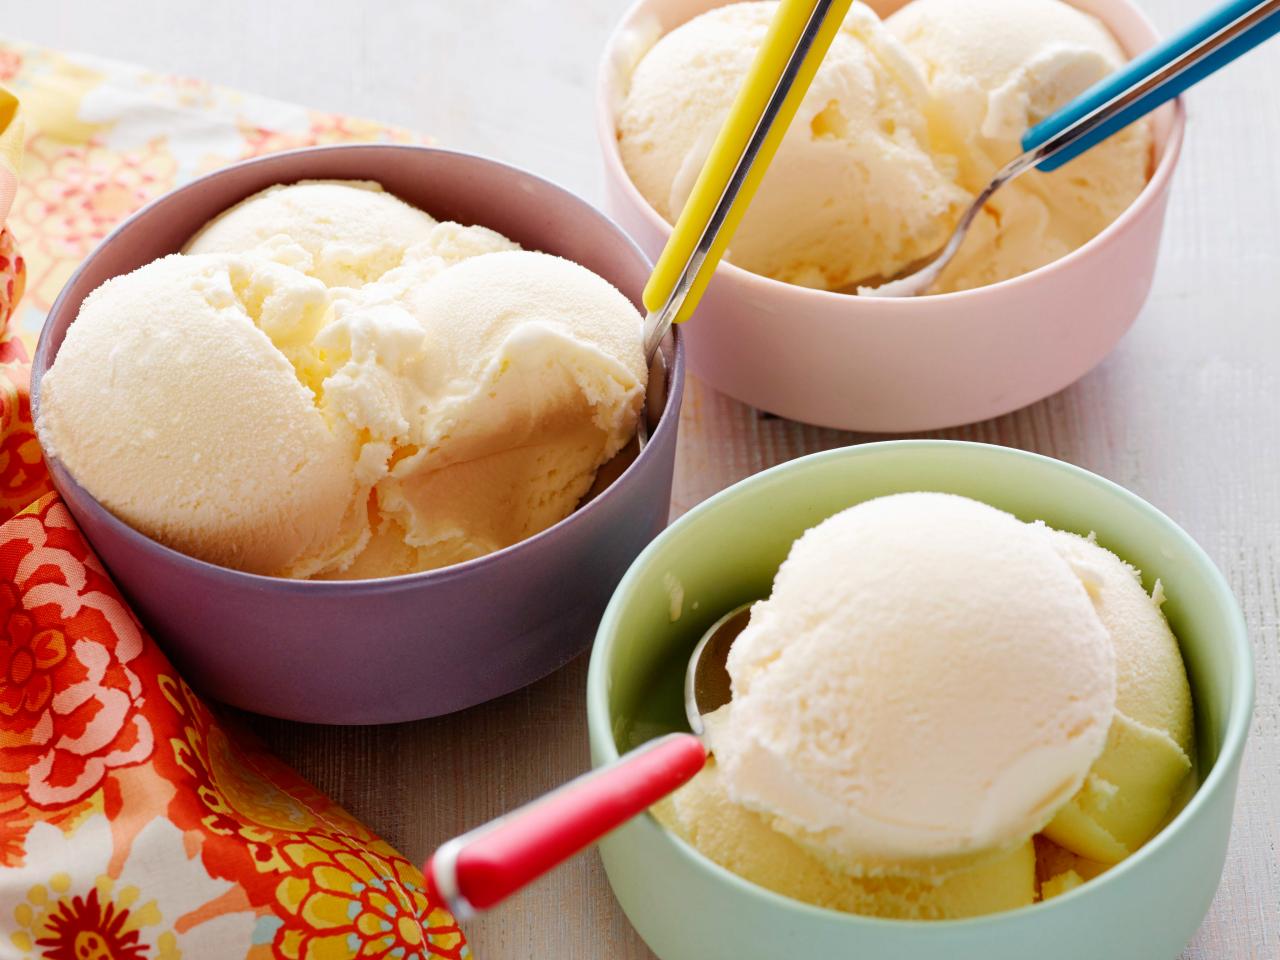 Best Homemade Ice Cream Recipe - How To Make Homemade Ice Cream